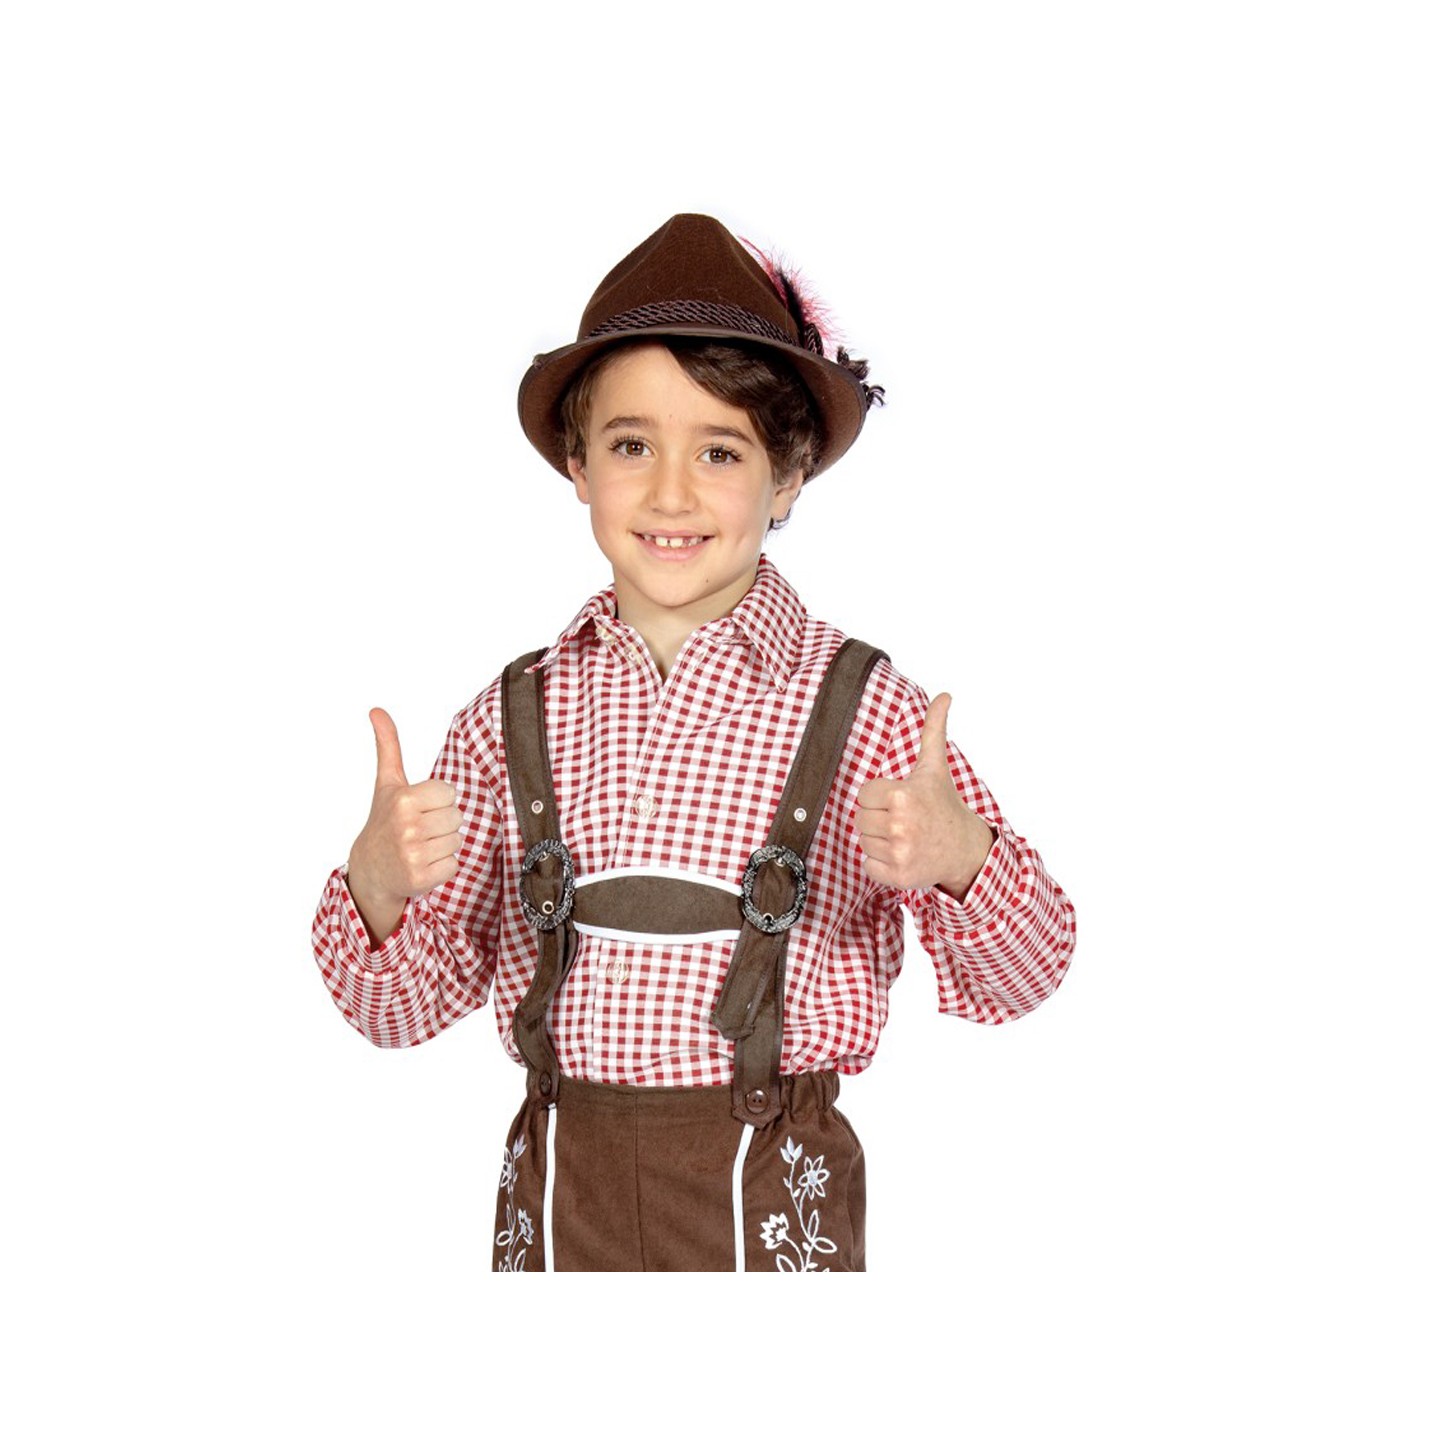 Tiroler hemd kind bordeaux geruit oktoberfest kleding